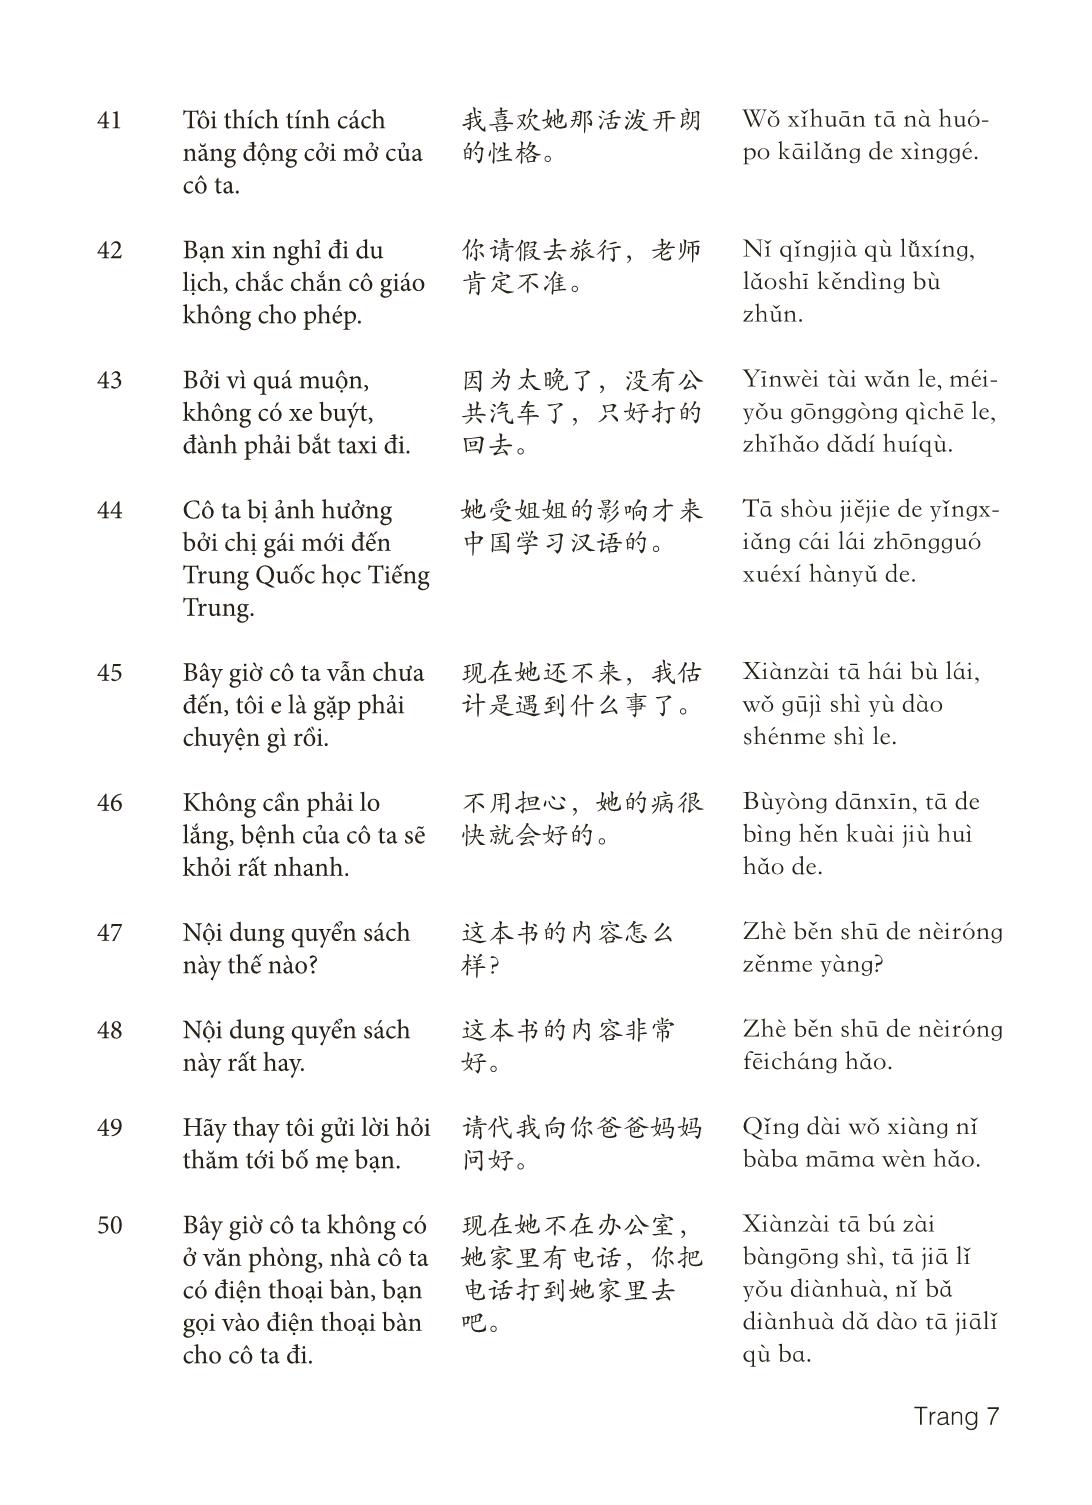 3000 Câu đàm thoại tiếng Hoa - Phần 24 trang 7